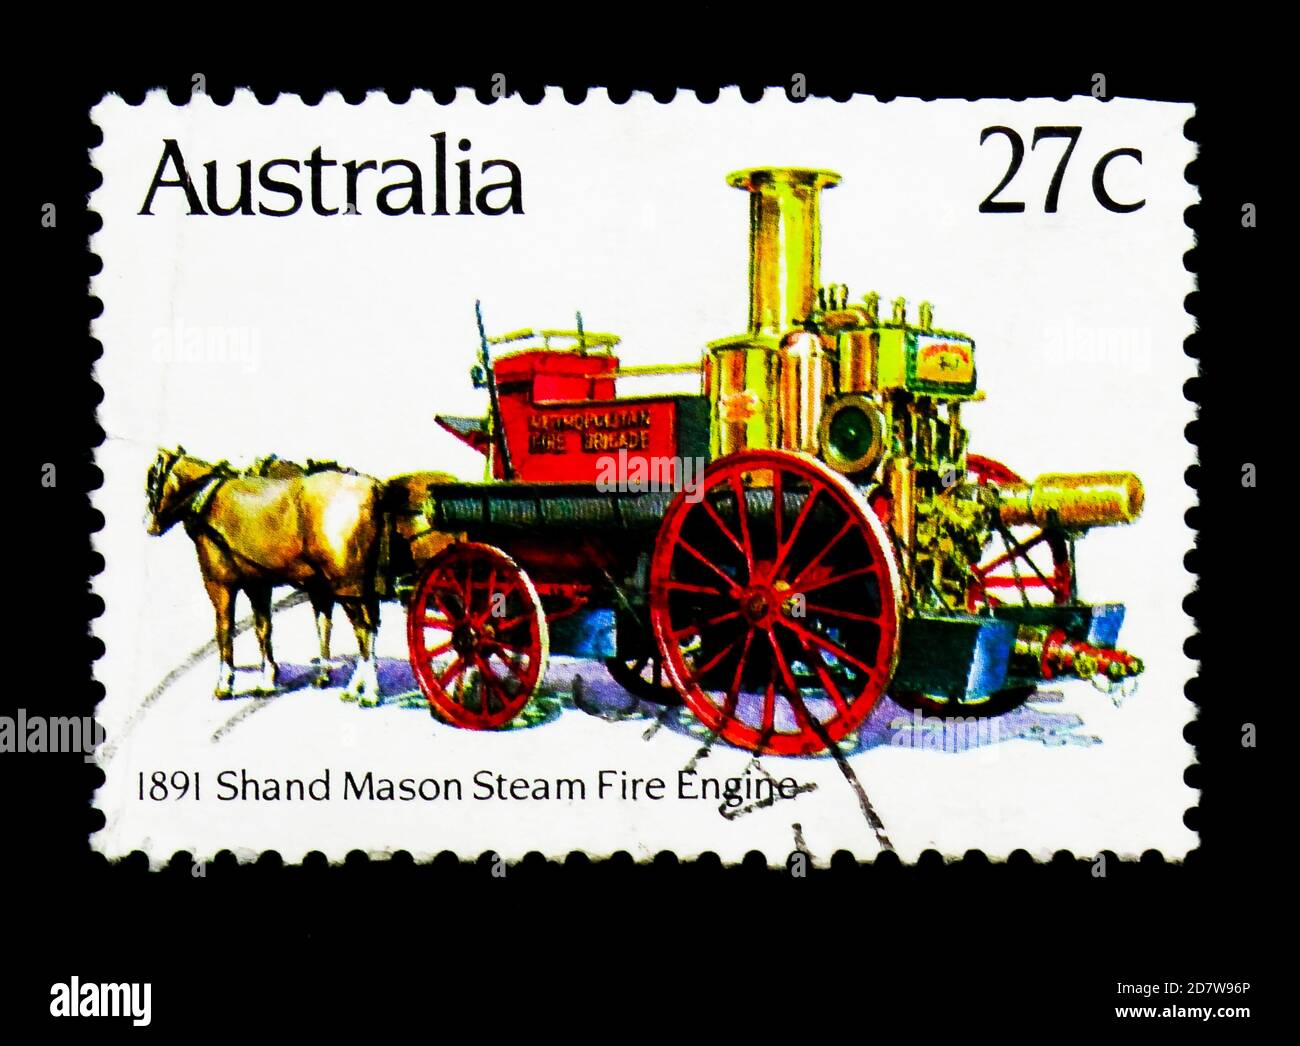 MOSKAU, RUSSLAND - 28. MÄRZ 2018: Eine in Australien gedruckte Marke zeigt Shand Mason Dampffeuermaschine (1891), Historic Fire Engines Serie, um 1983 Stockfoto